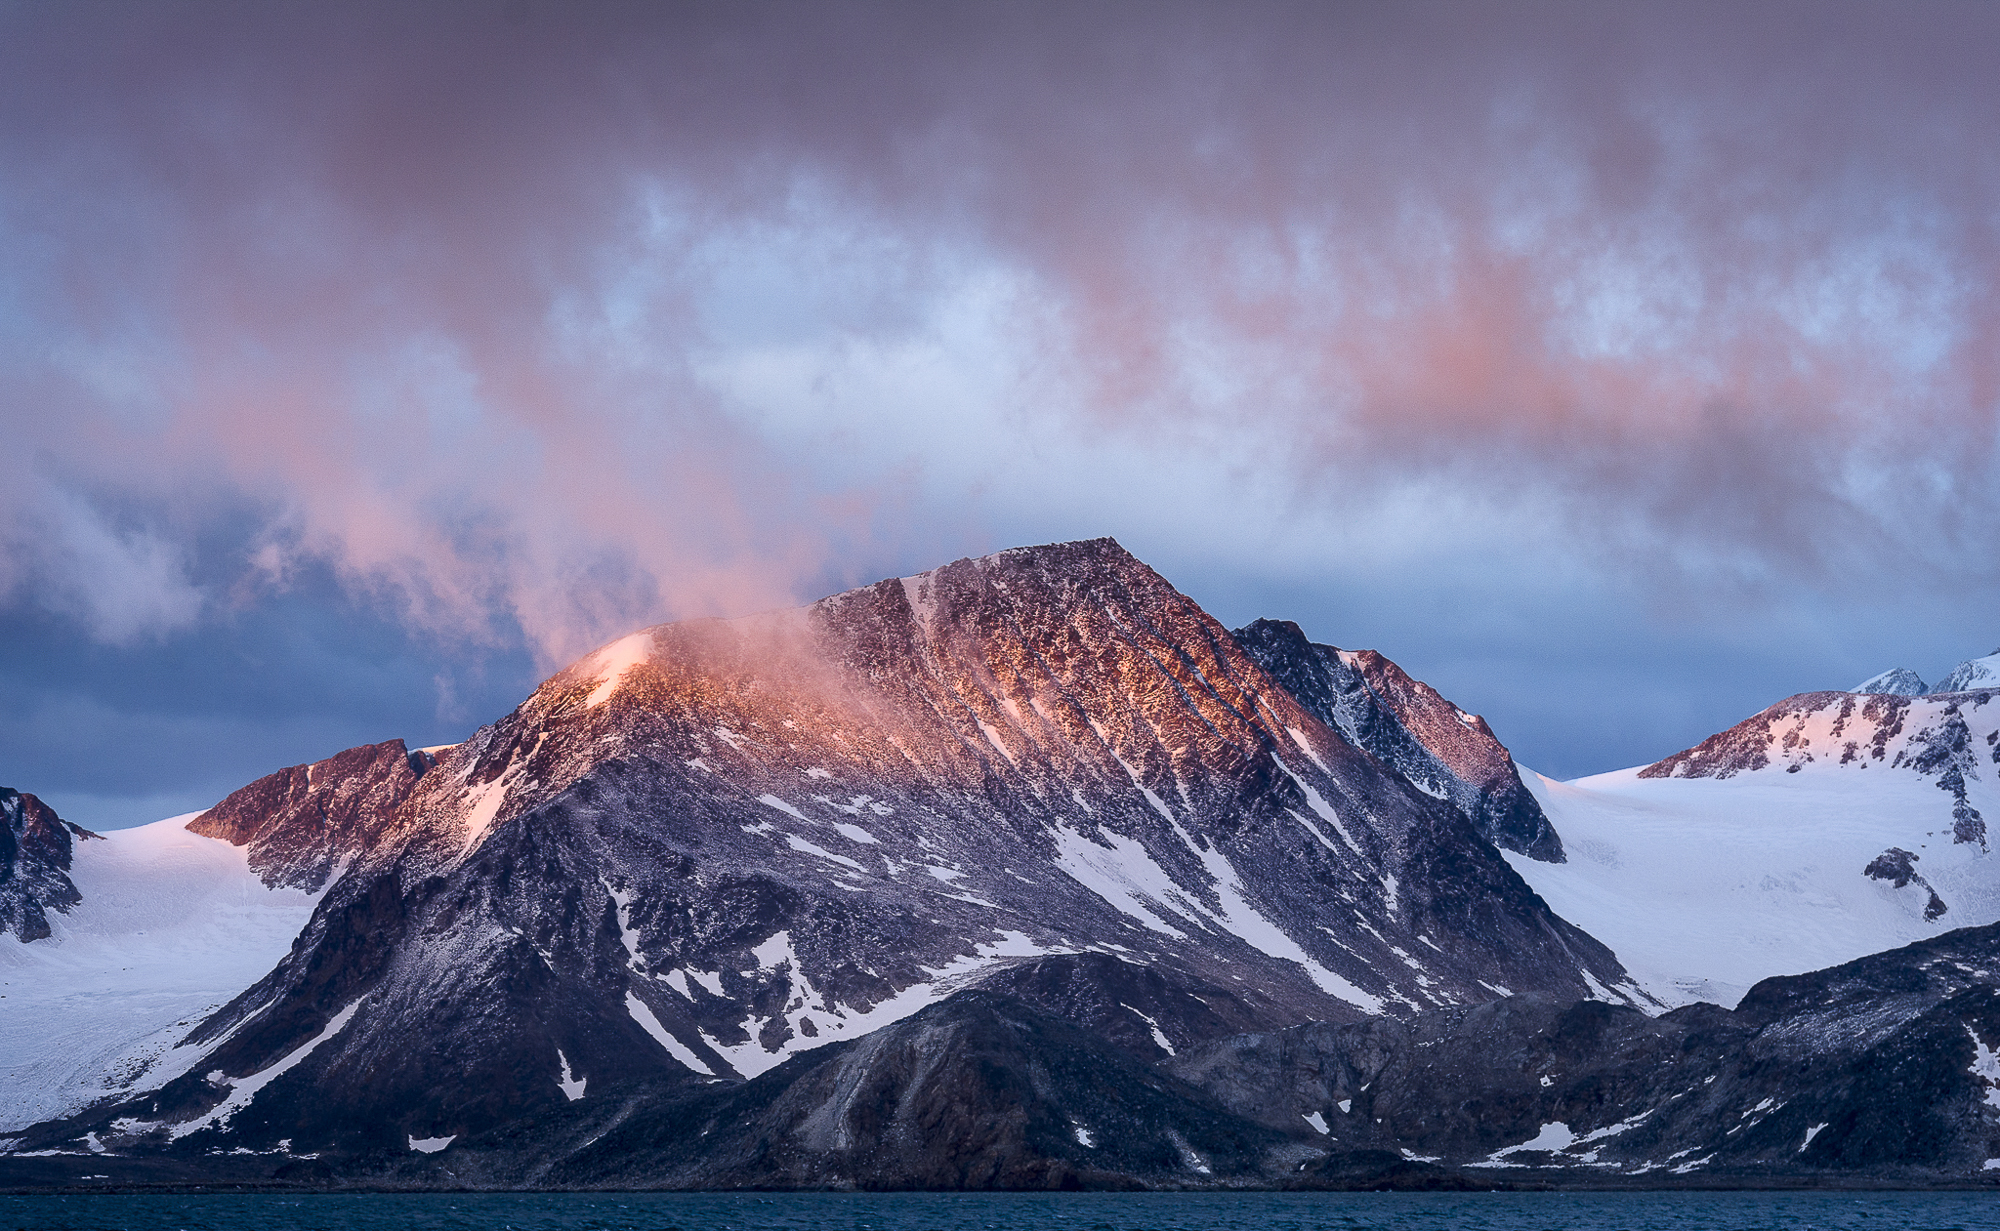 Fotoexpedition till isbjörnens rike, Svalbard. Fotoresa med Wild Nature fotoresor. Foto Frida Hermansson